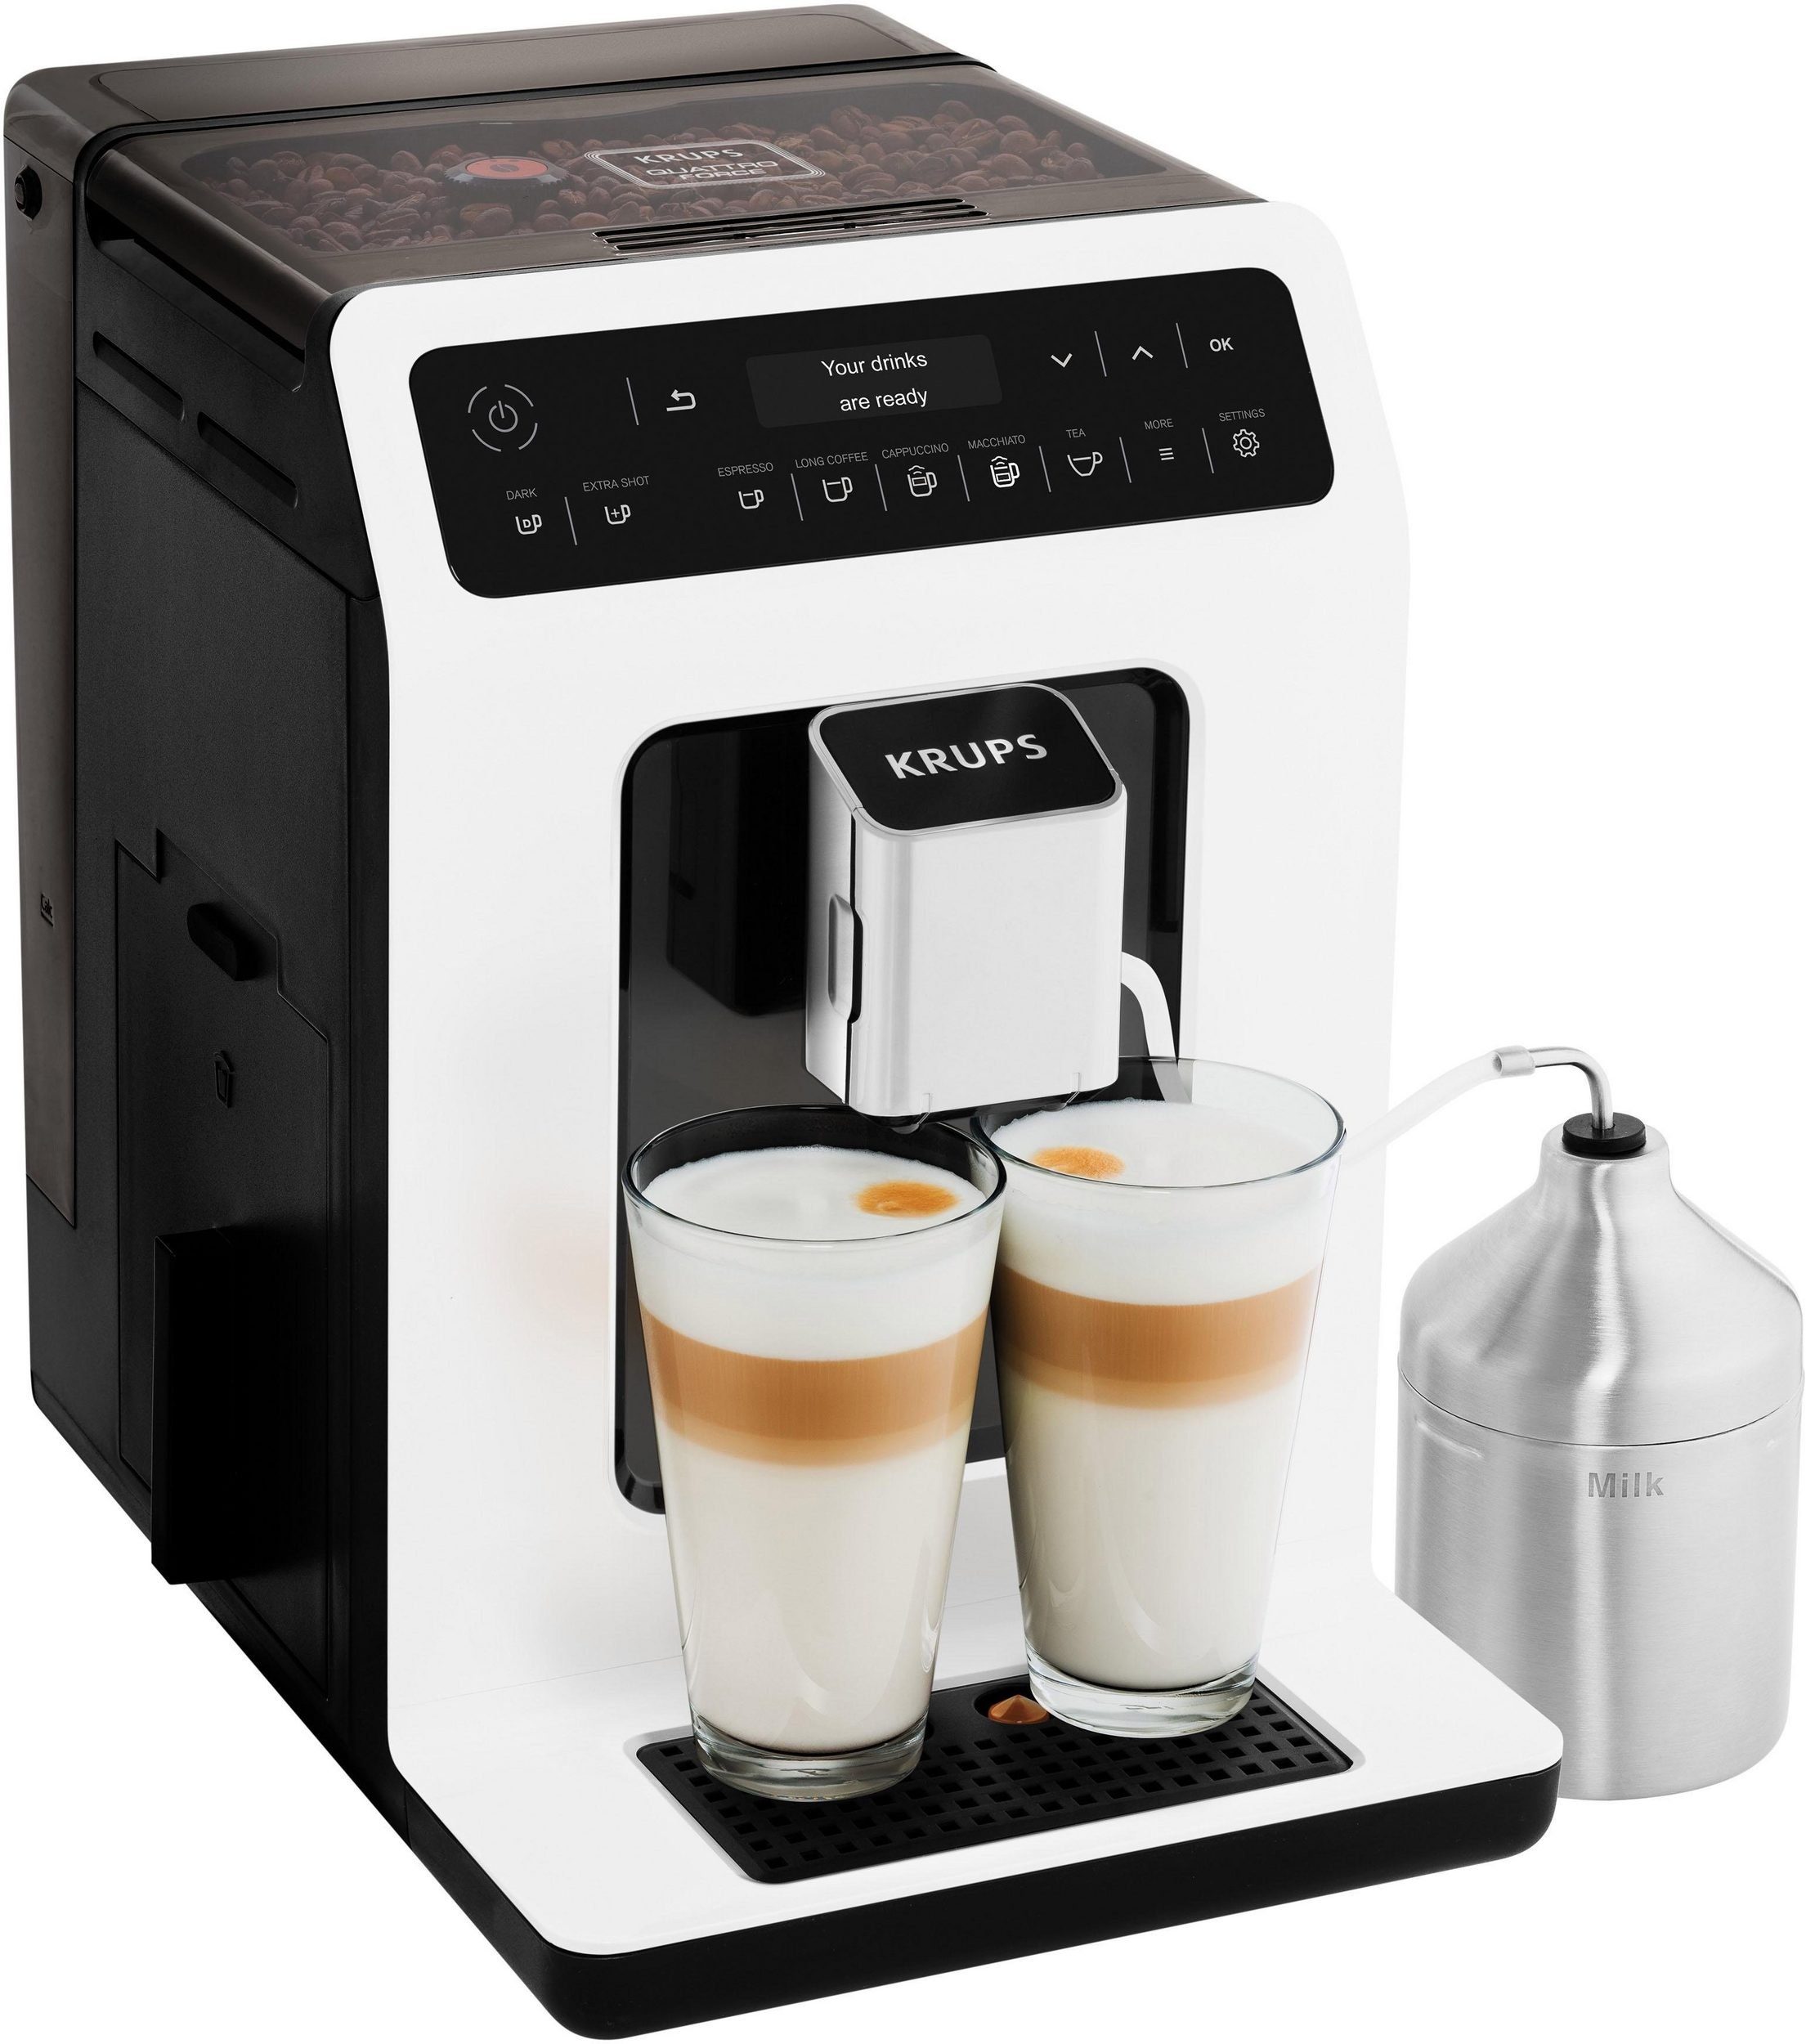 Krups Kaffeevollautomat EA8911 Evidence, inkl. Milchbehälter Kaffeevollautomat